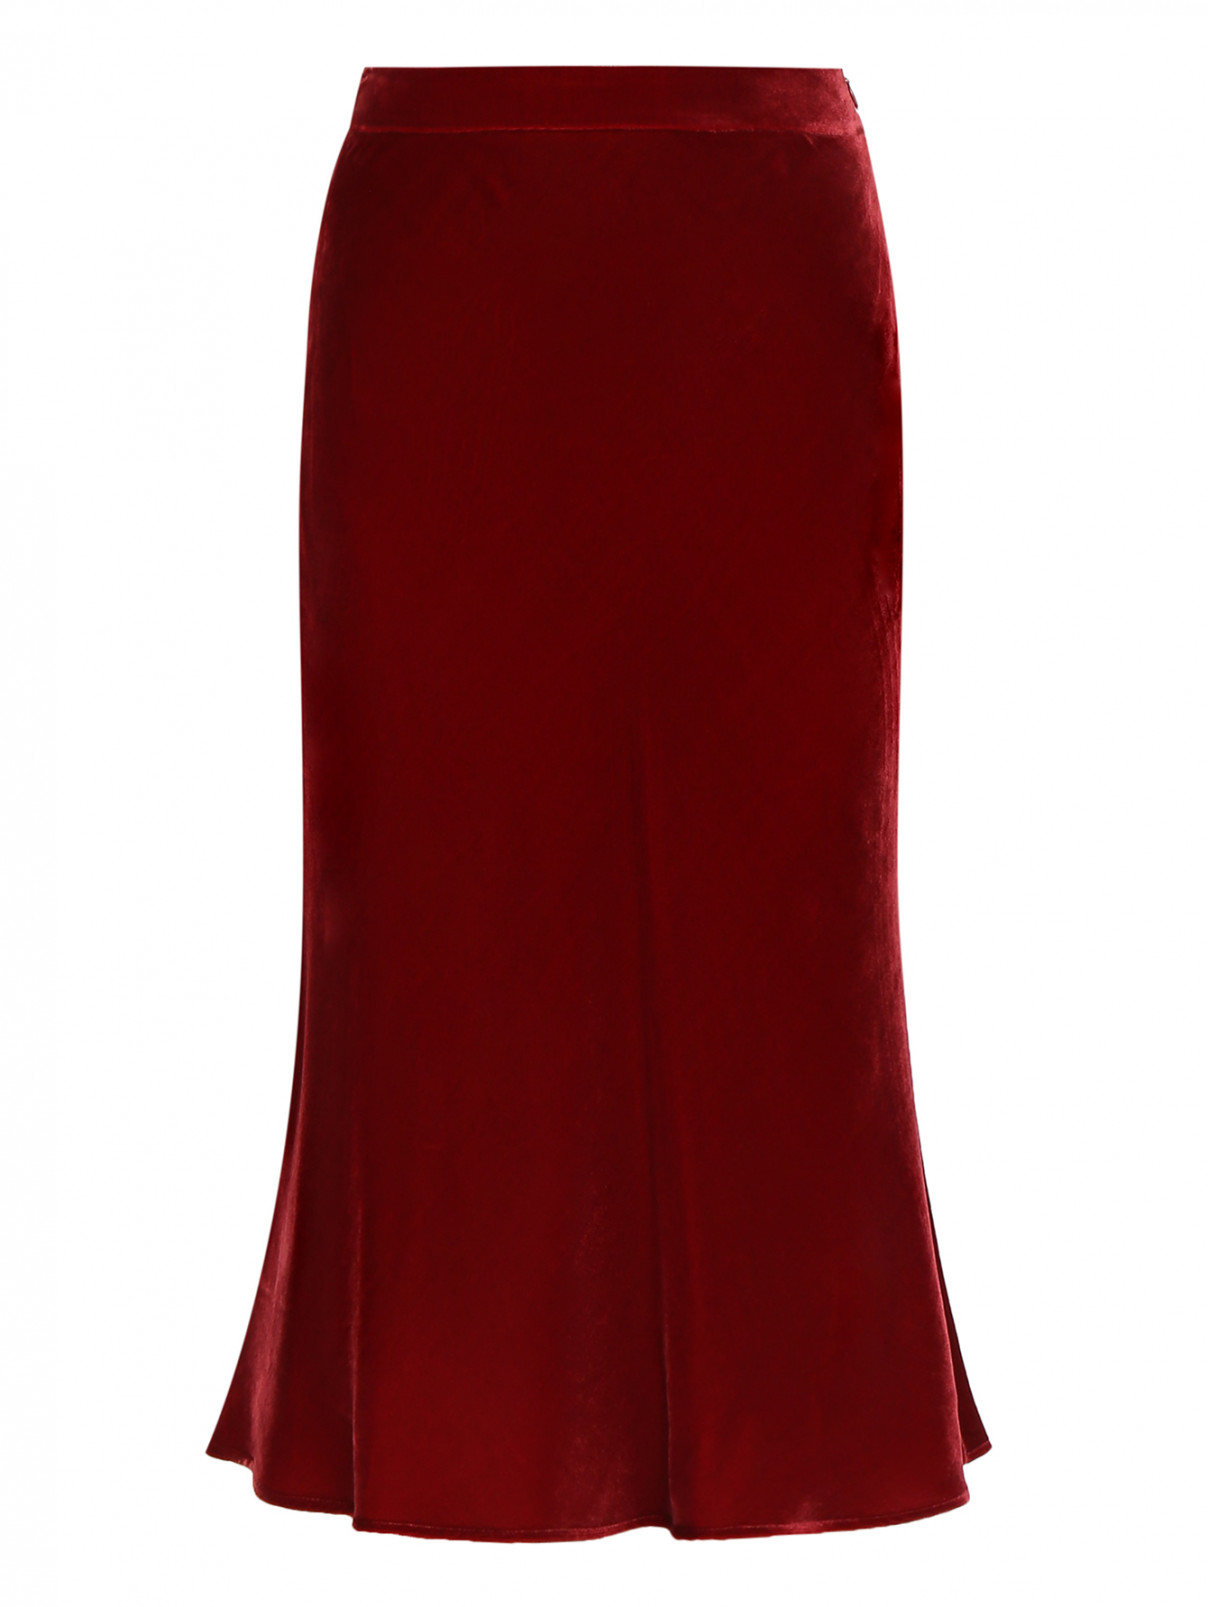 Юбка-миди из вискозы и шелка Moschino Boutique  –  Общий вид  – Цвет:  Красный